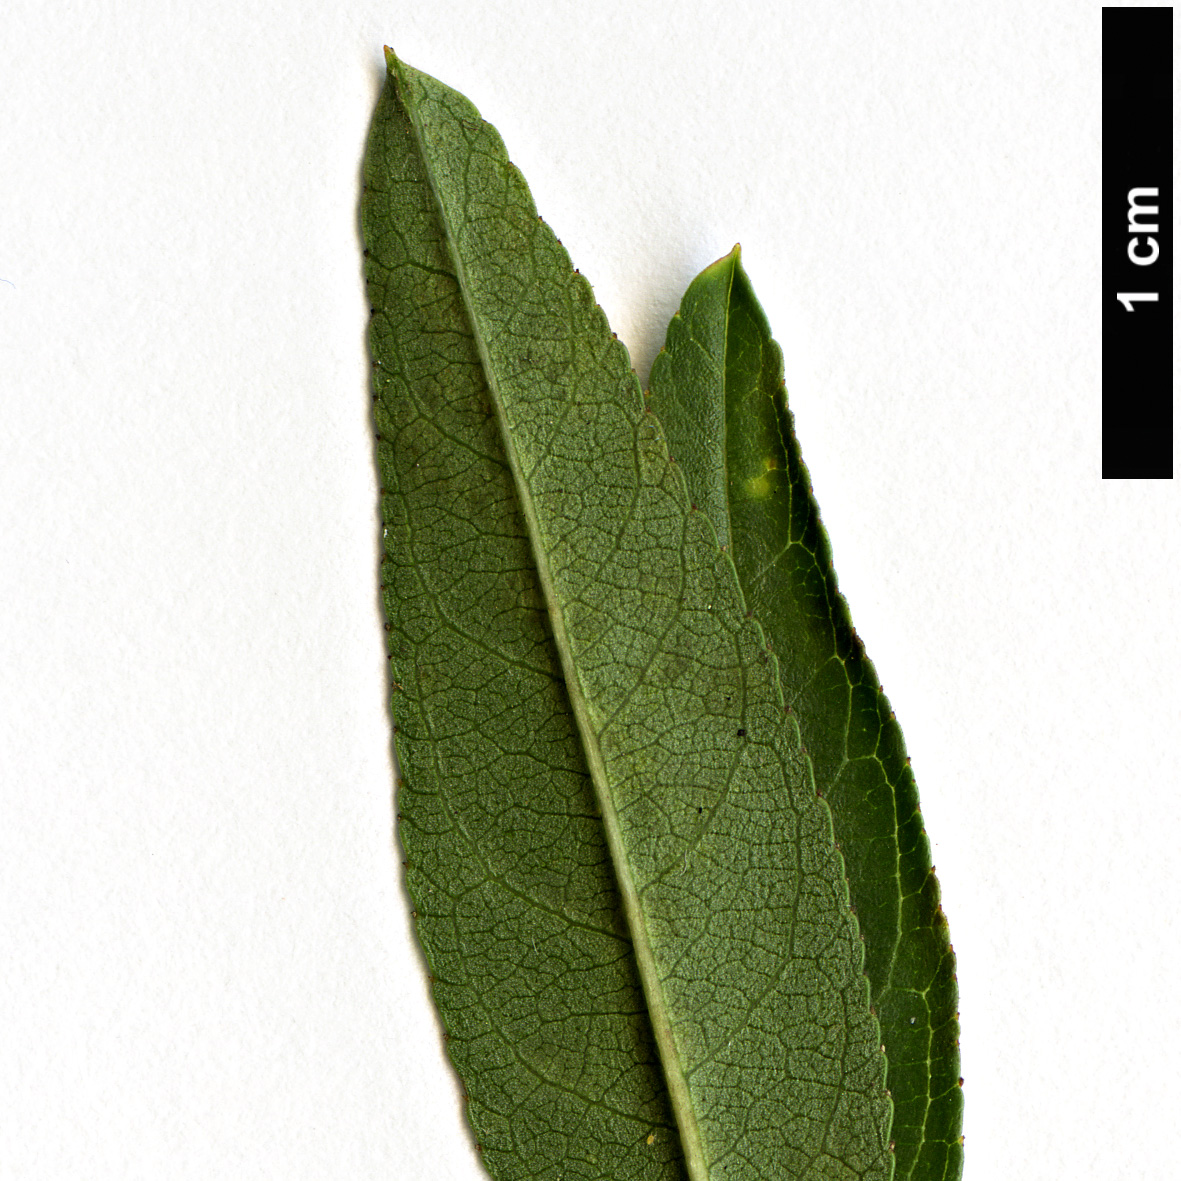 High resolution image: Family: Rosaceae - Genus: Prunus - Taxon: webbii